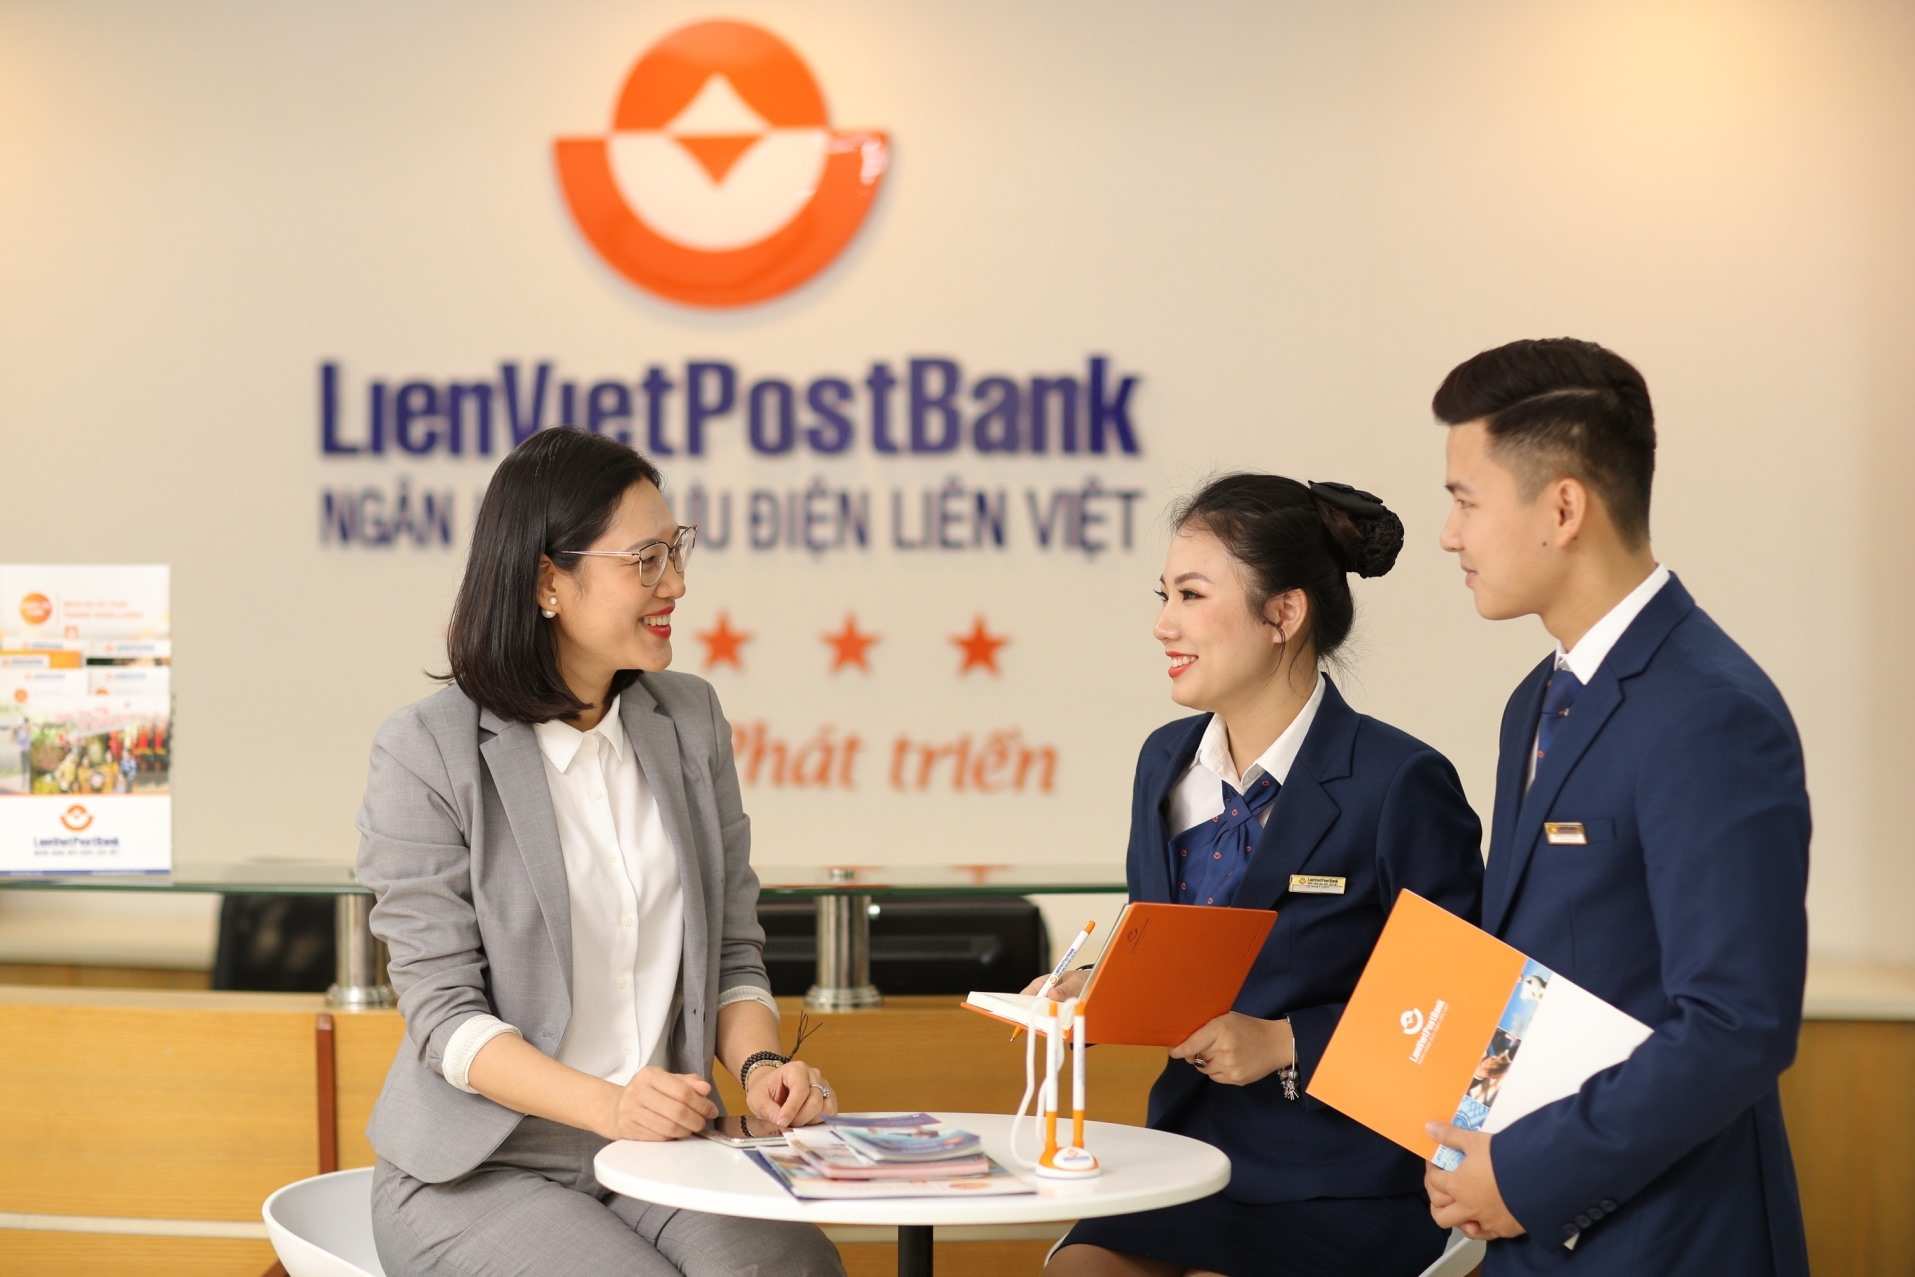 Giờ làm việc ngân hàng LienVietPostBank hiện nay như thế nào?